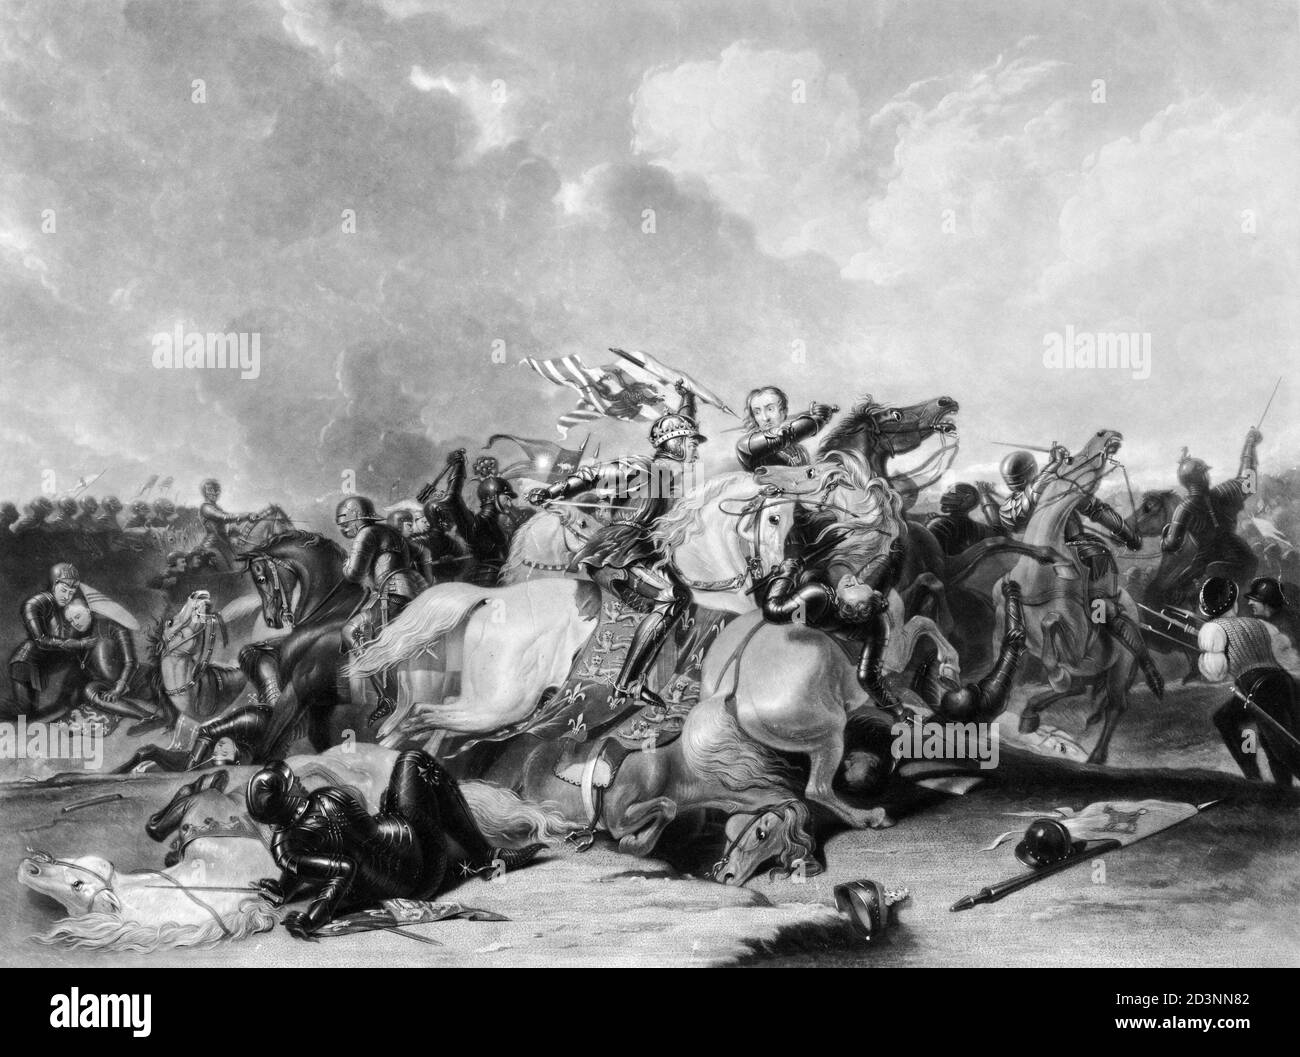 Die Schlacht von Bosworth Field, die letzte bedeutende Schlacht in den Kriegen der Rosen, 1485. Richard III. Ist mit einem Schwert auf dem Pferderücken. Drucken von 1835. Stockfoto